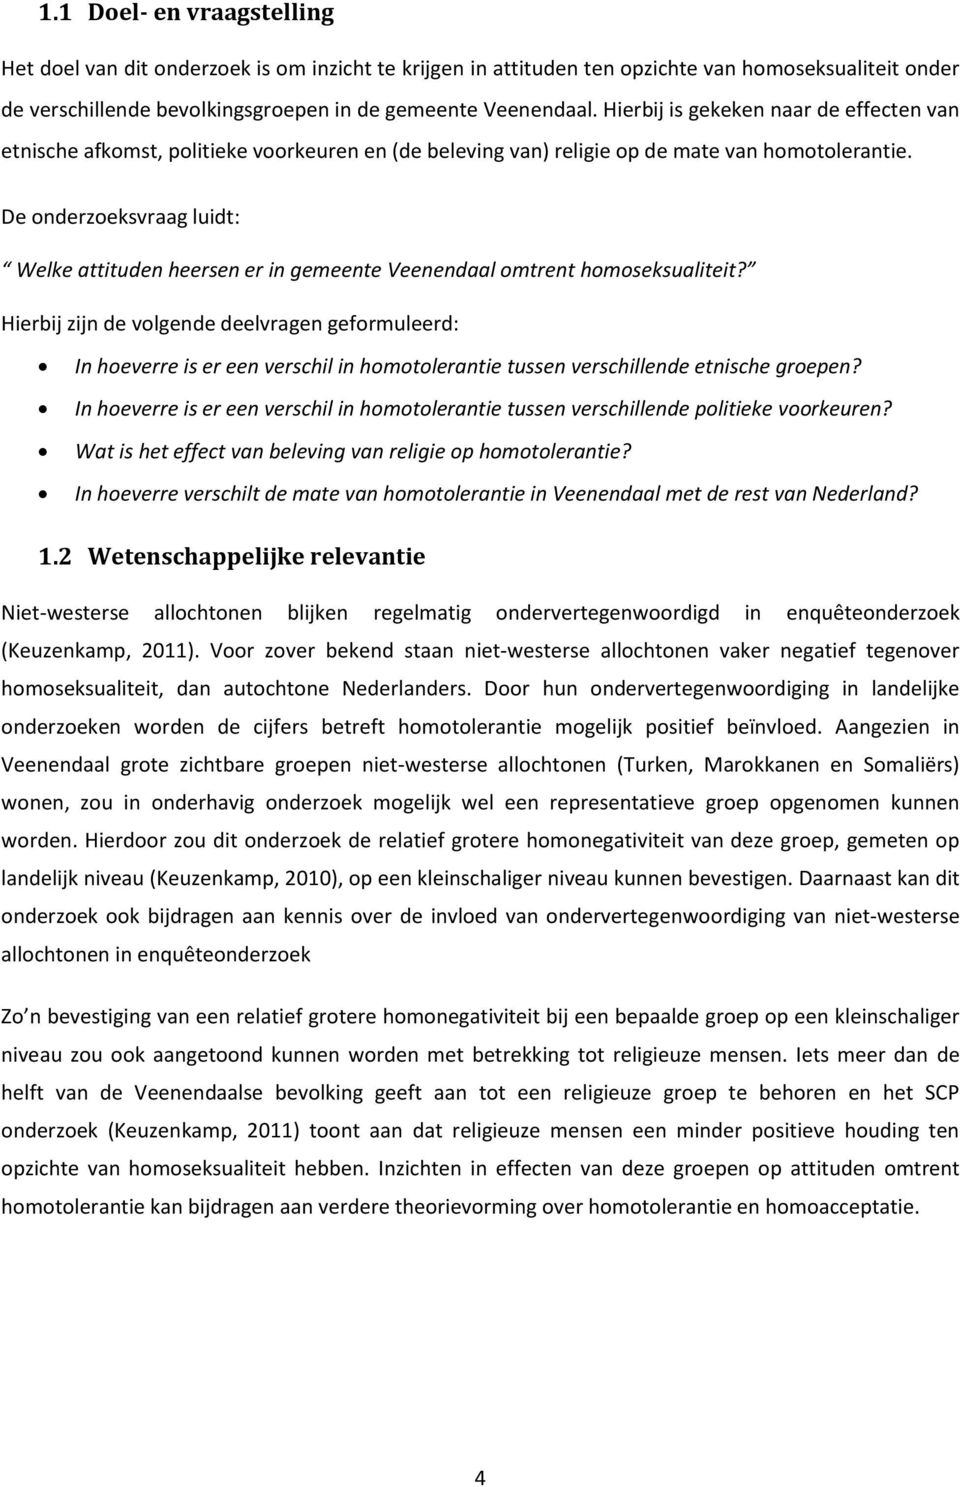 De onderzoeksvraag luidt: Welke attituden heersen er in gemeente Veenendaal omtrent homoseksualiteit?